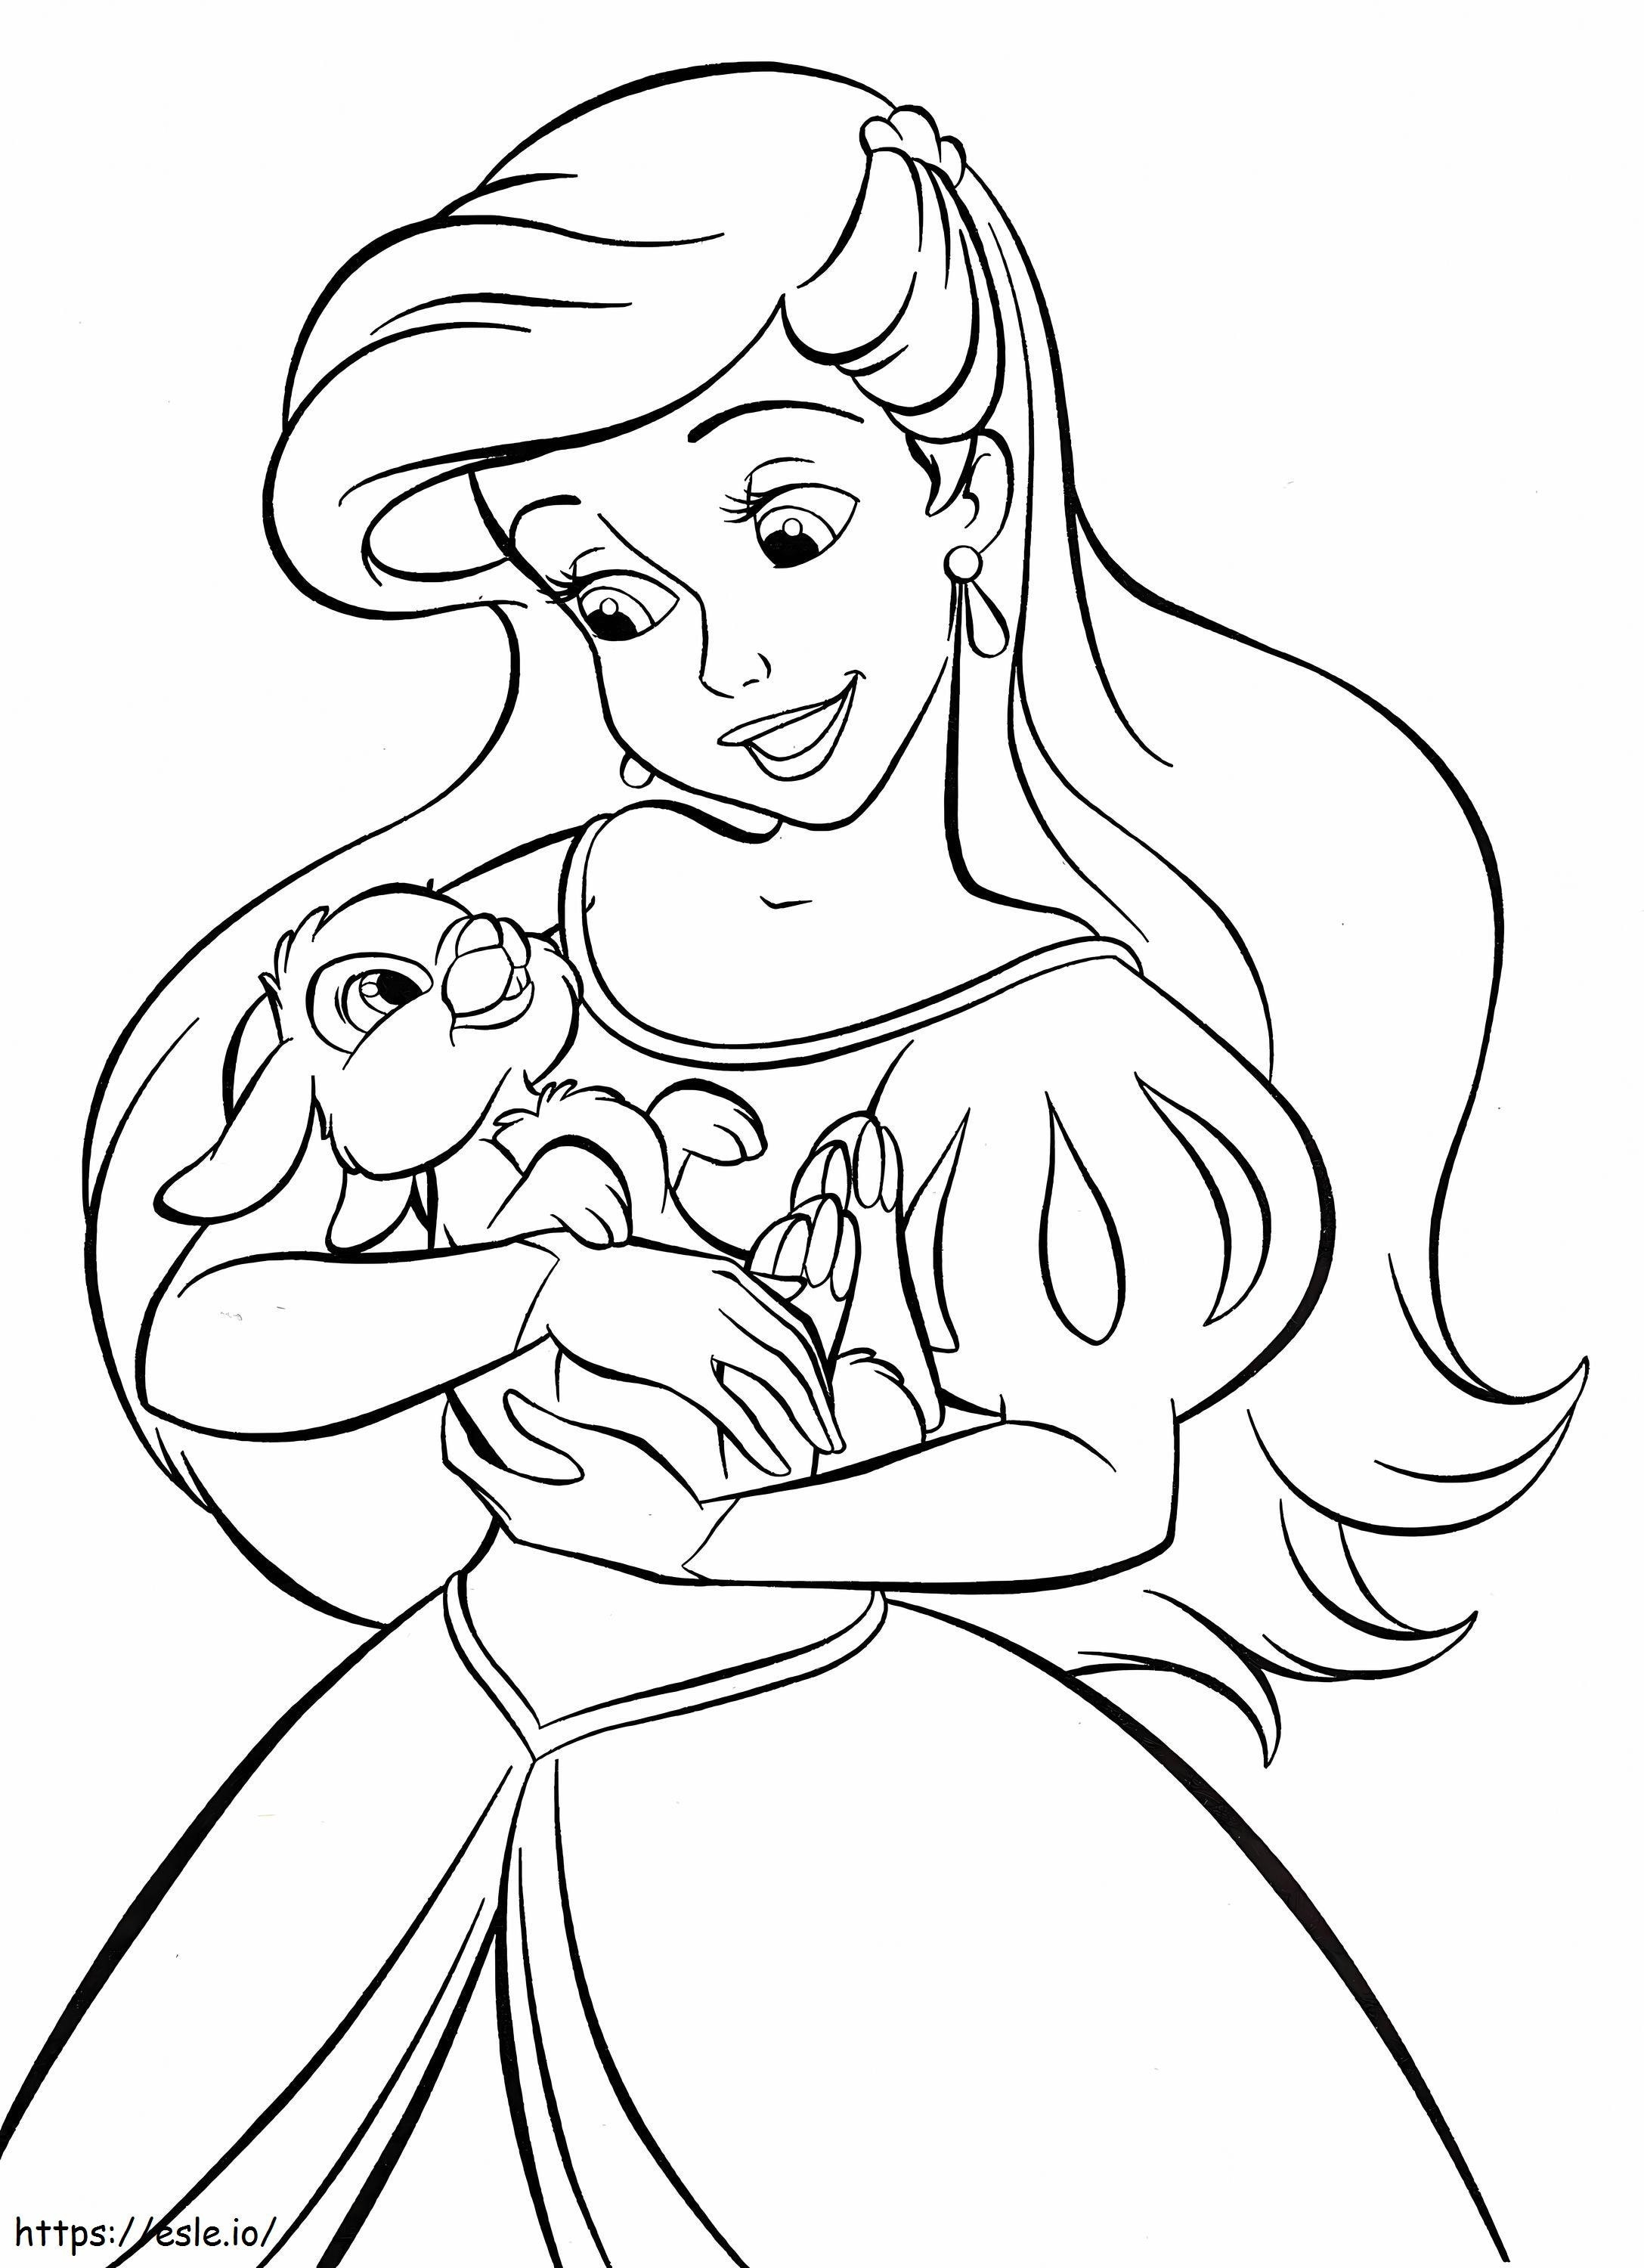 Księżniczka Disneya Ariel z króliczkiem kolorowanka